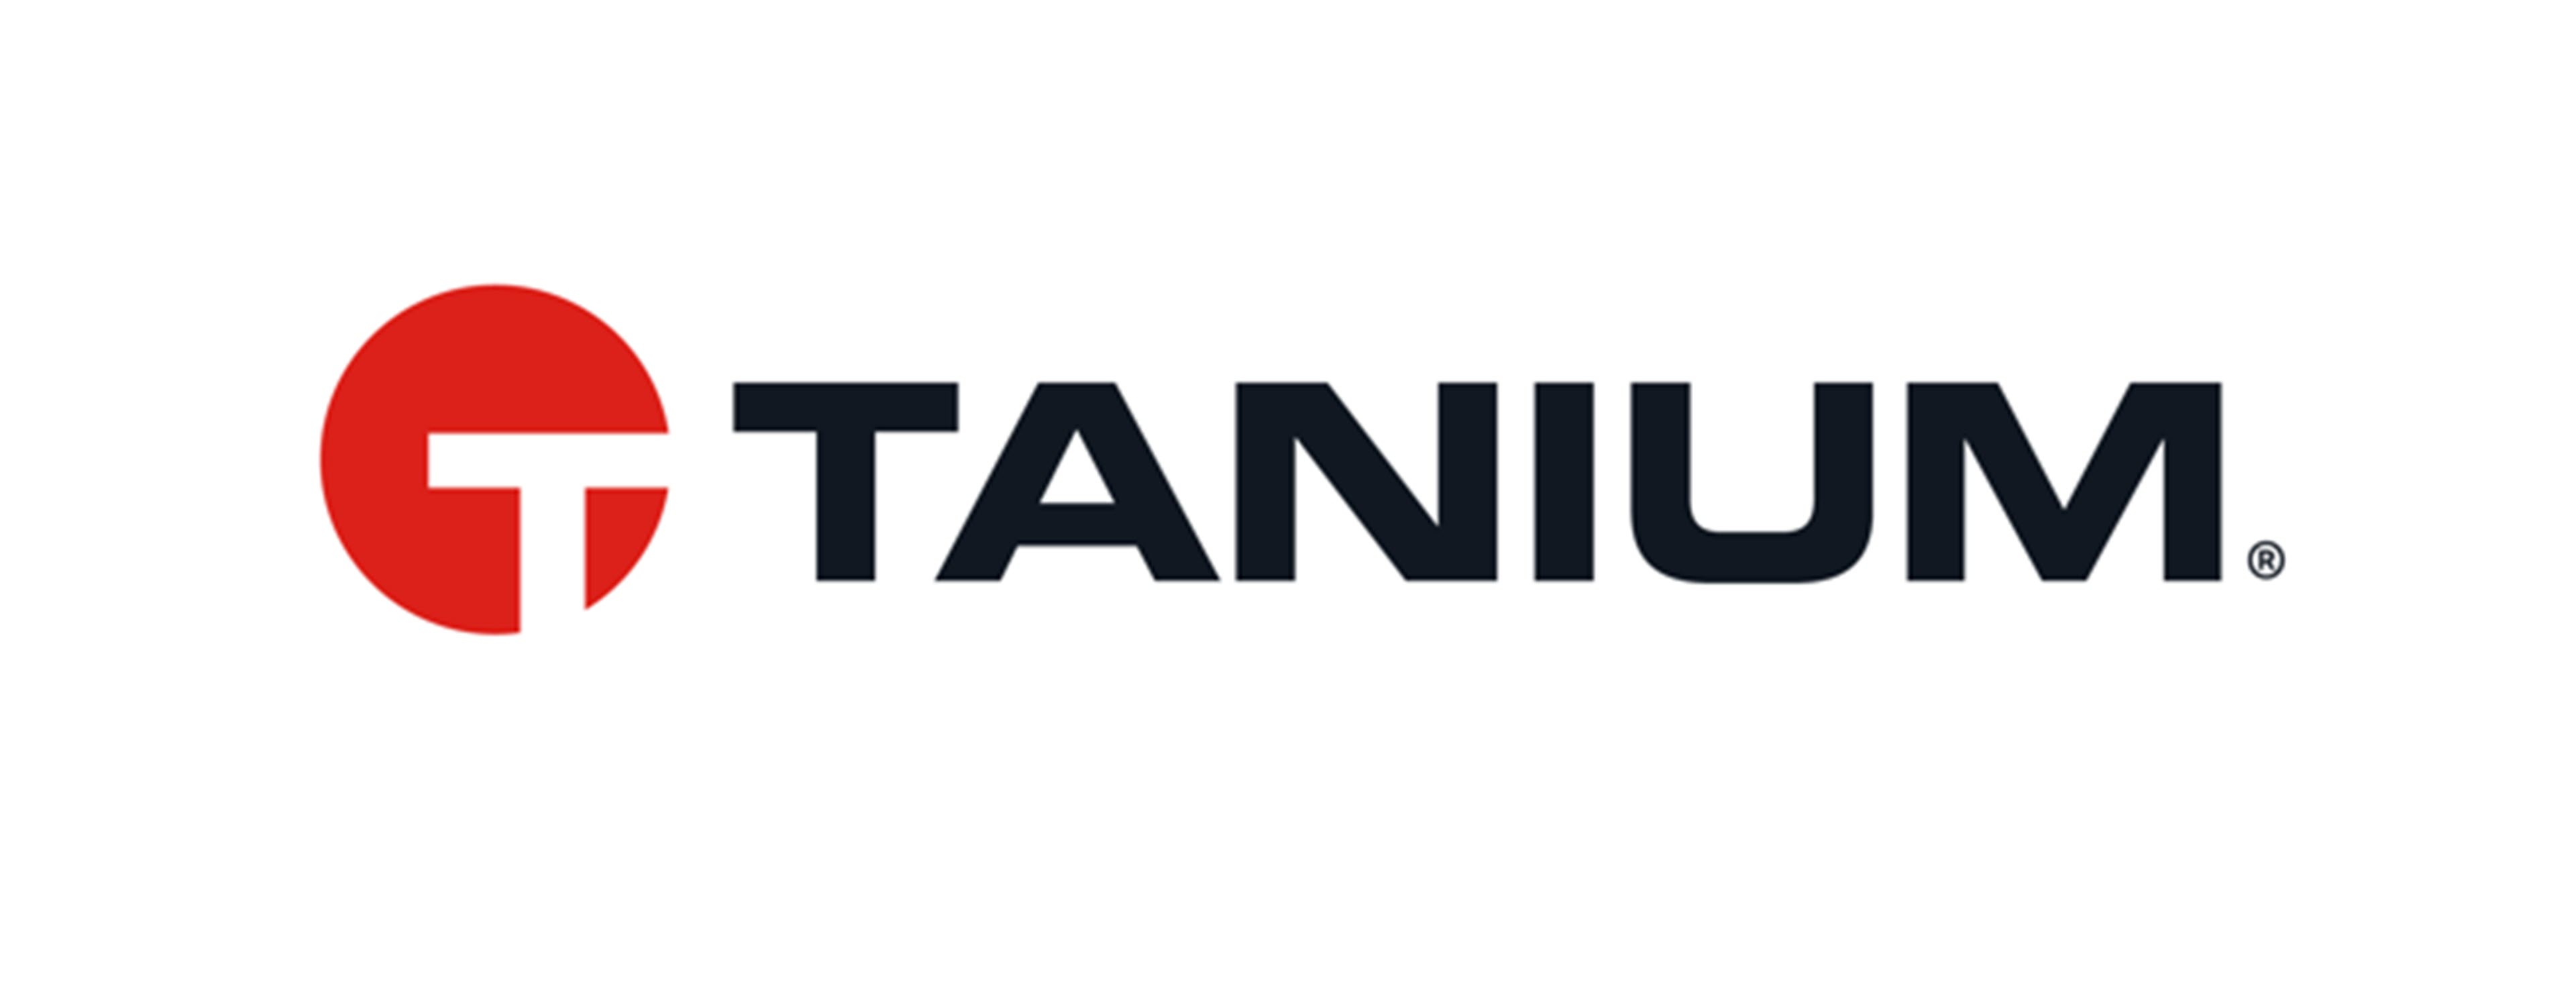             Tanium-Logo        